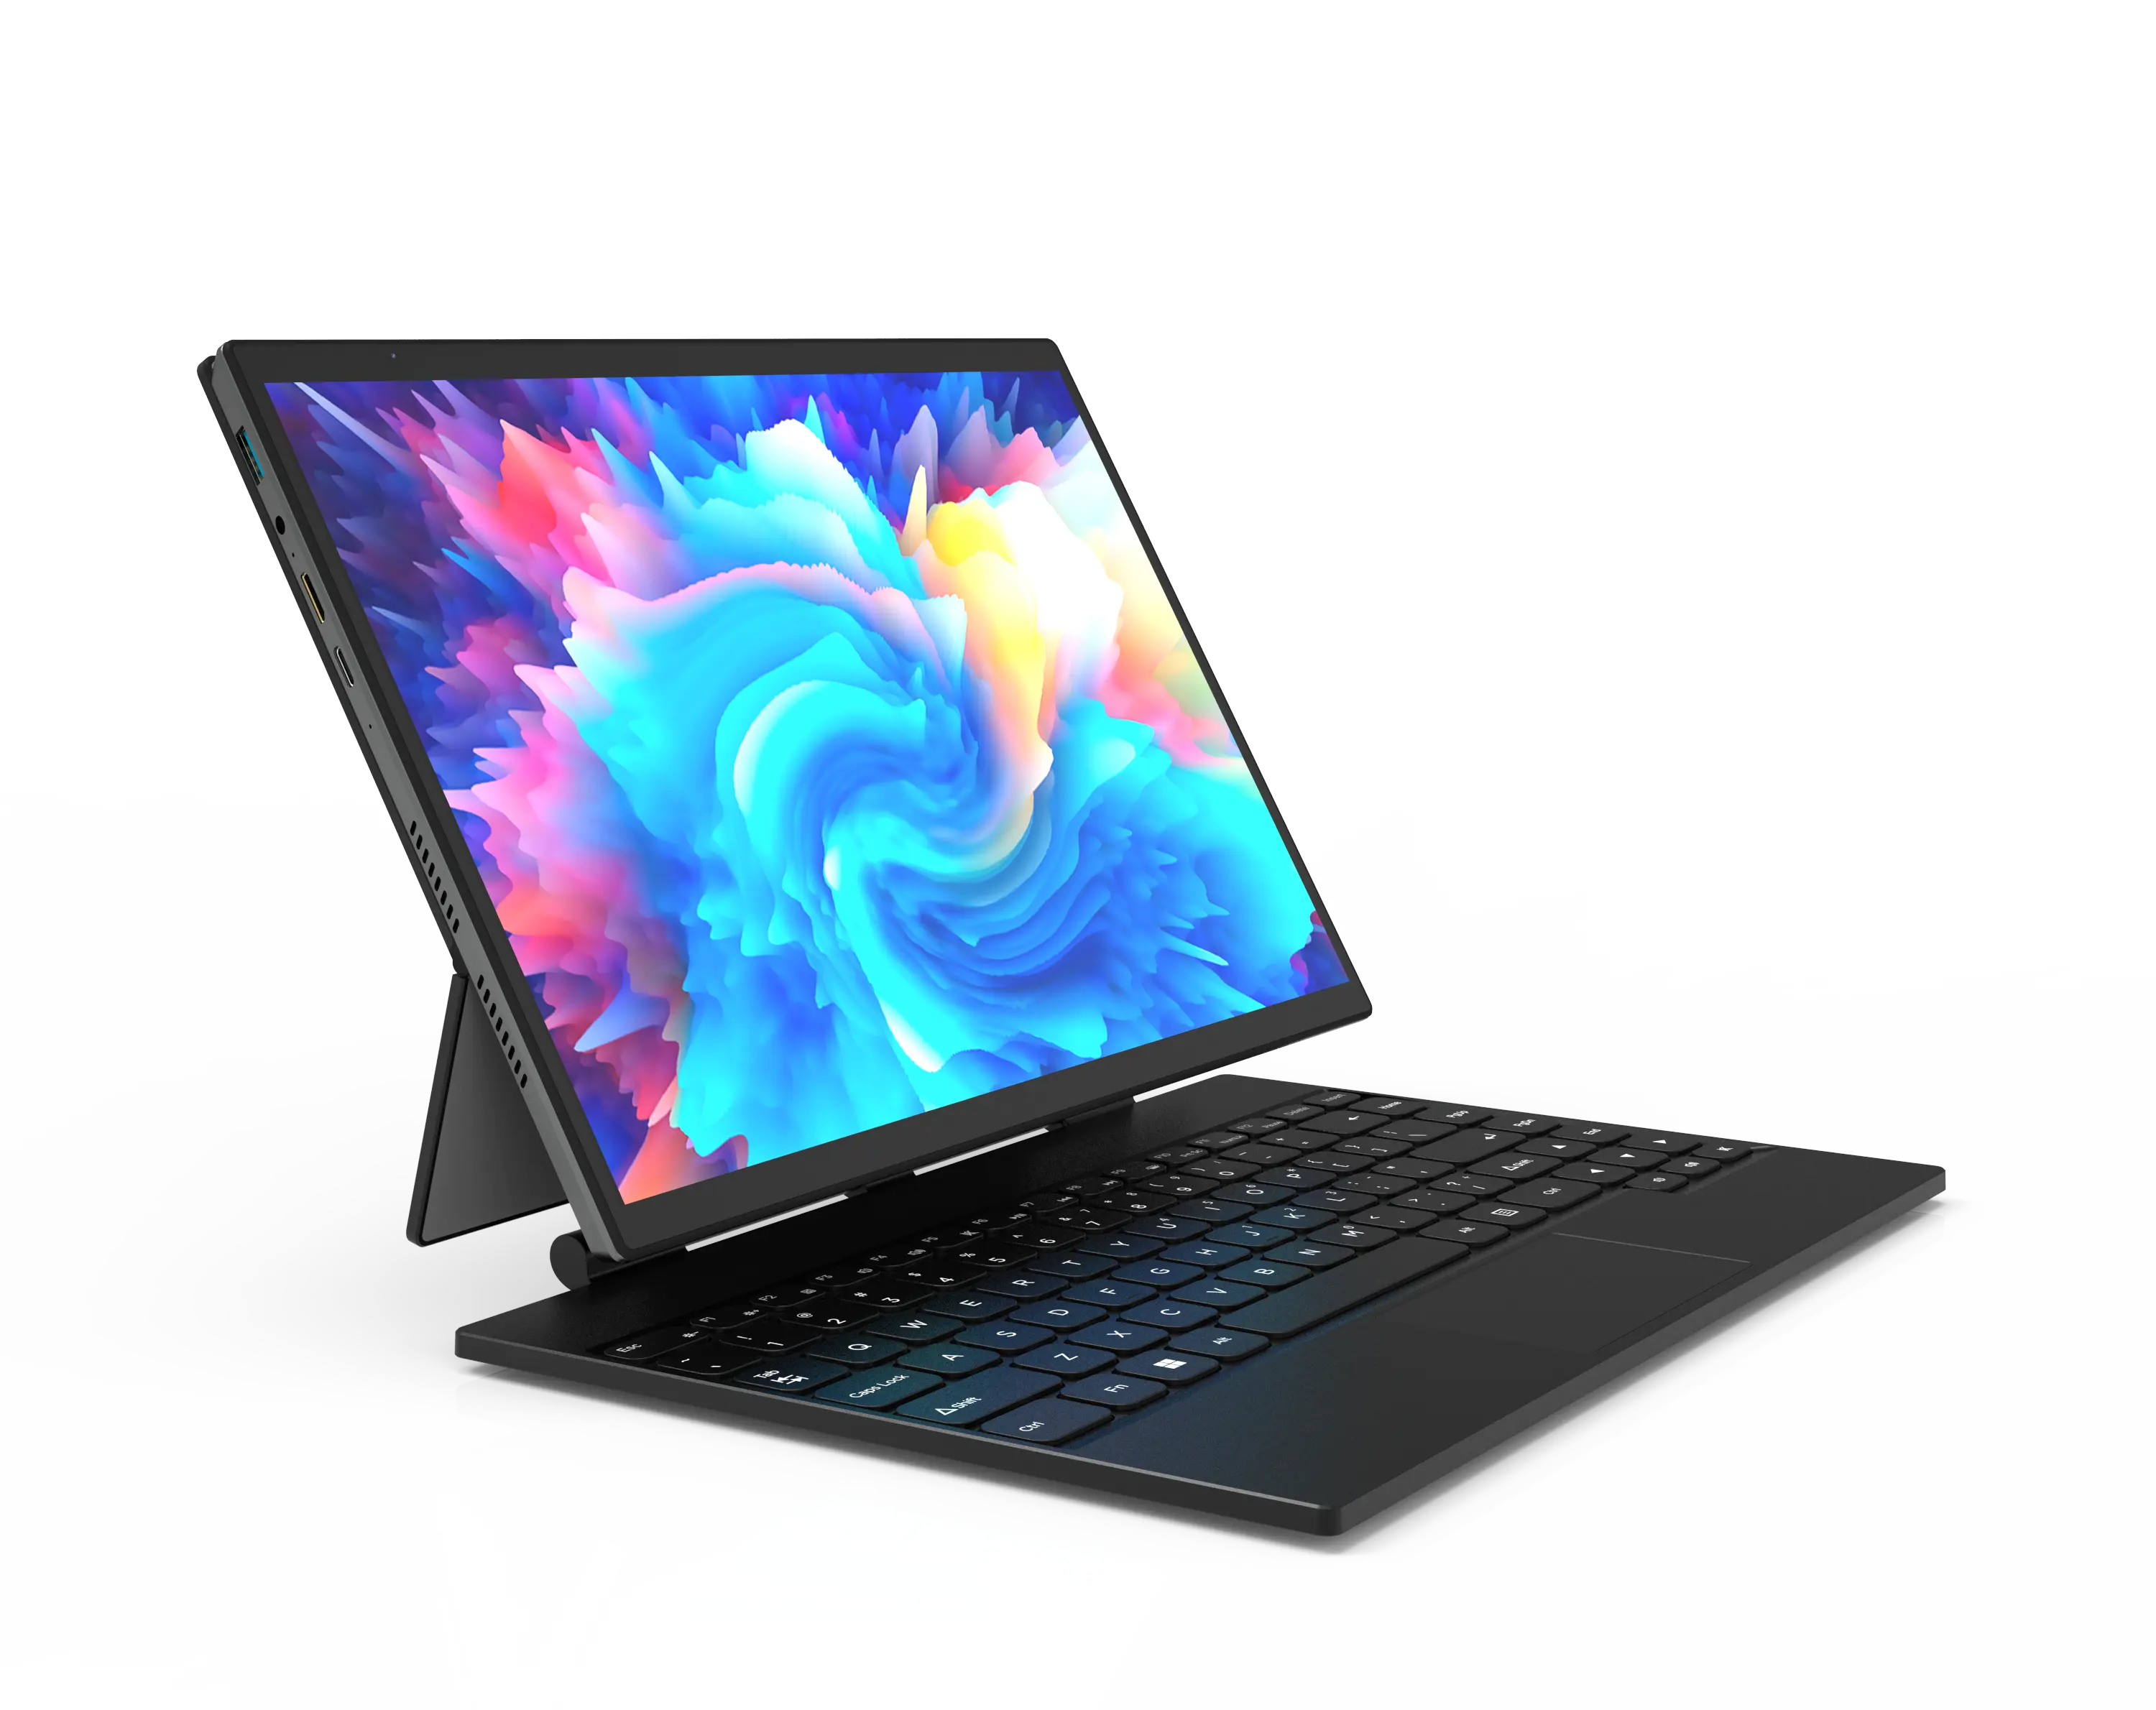 Vente en gros chaude 14 pouces Yoga écran tactile Win 10 Notebook N5105 Quad Core 16 Go 512 Go Ssd 2 en 1 Tablette ordinateur portable avec stylet